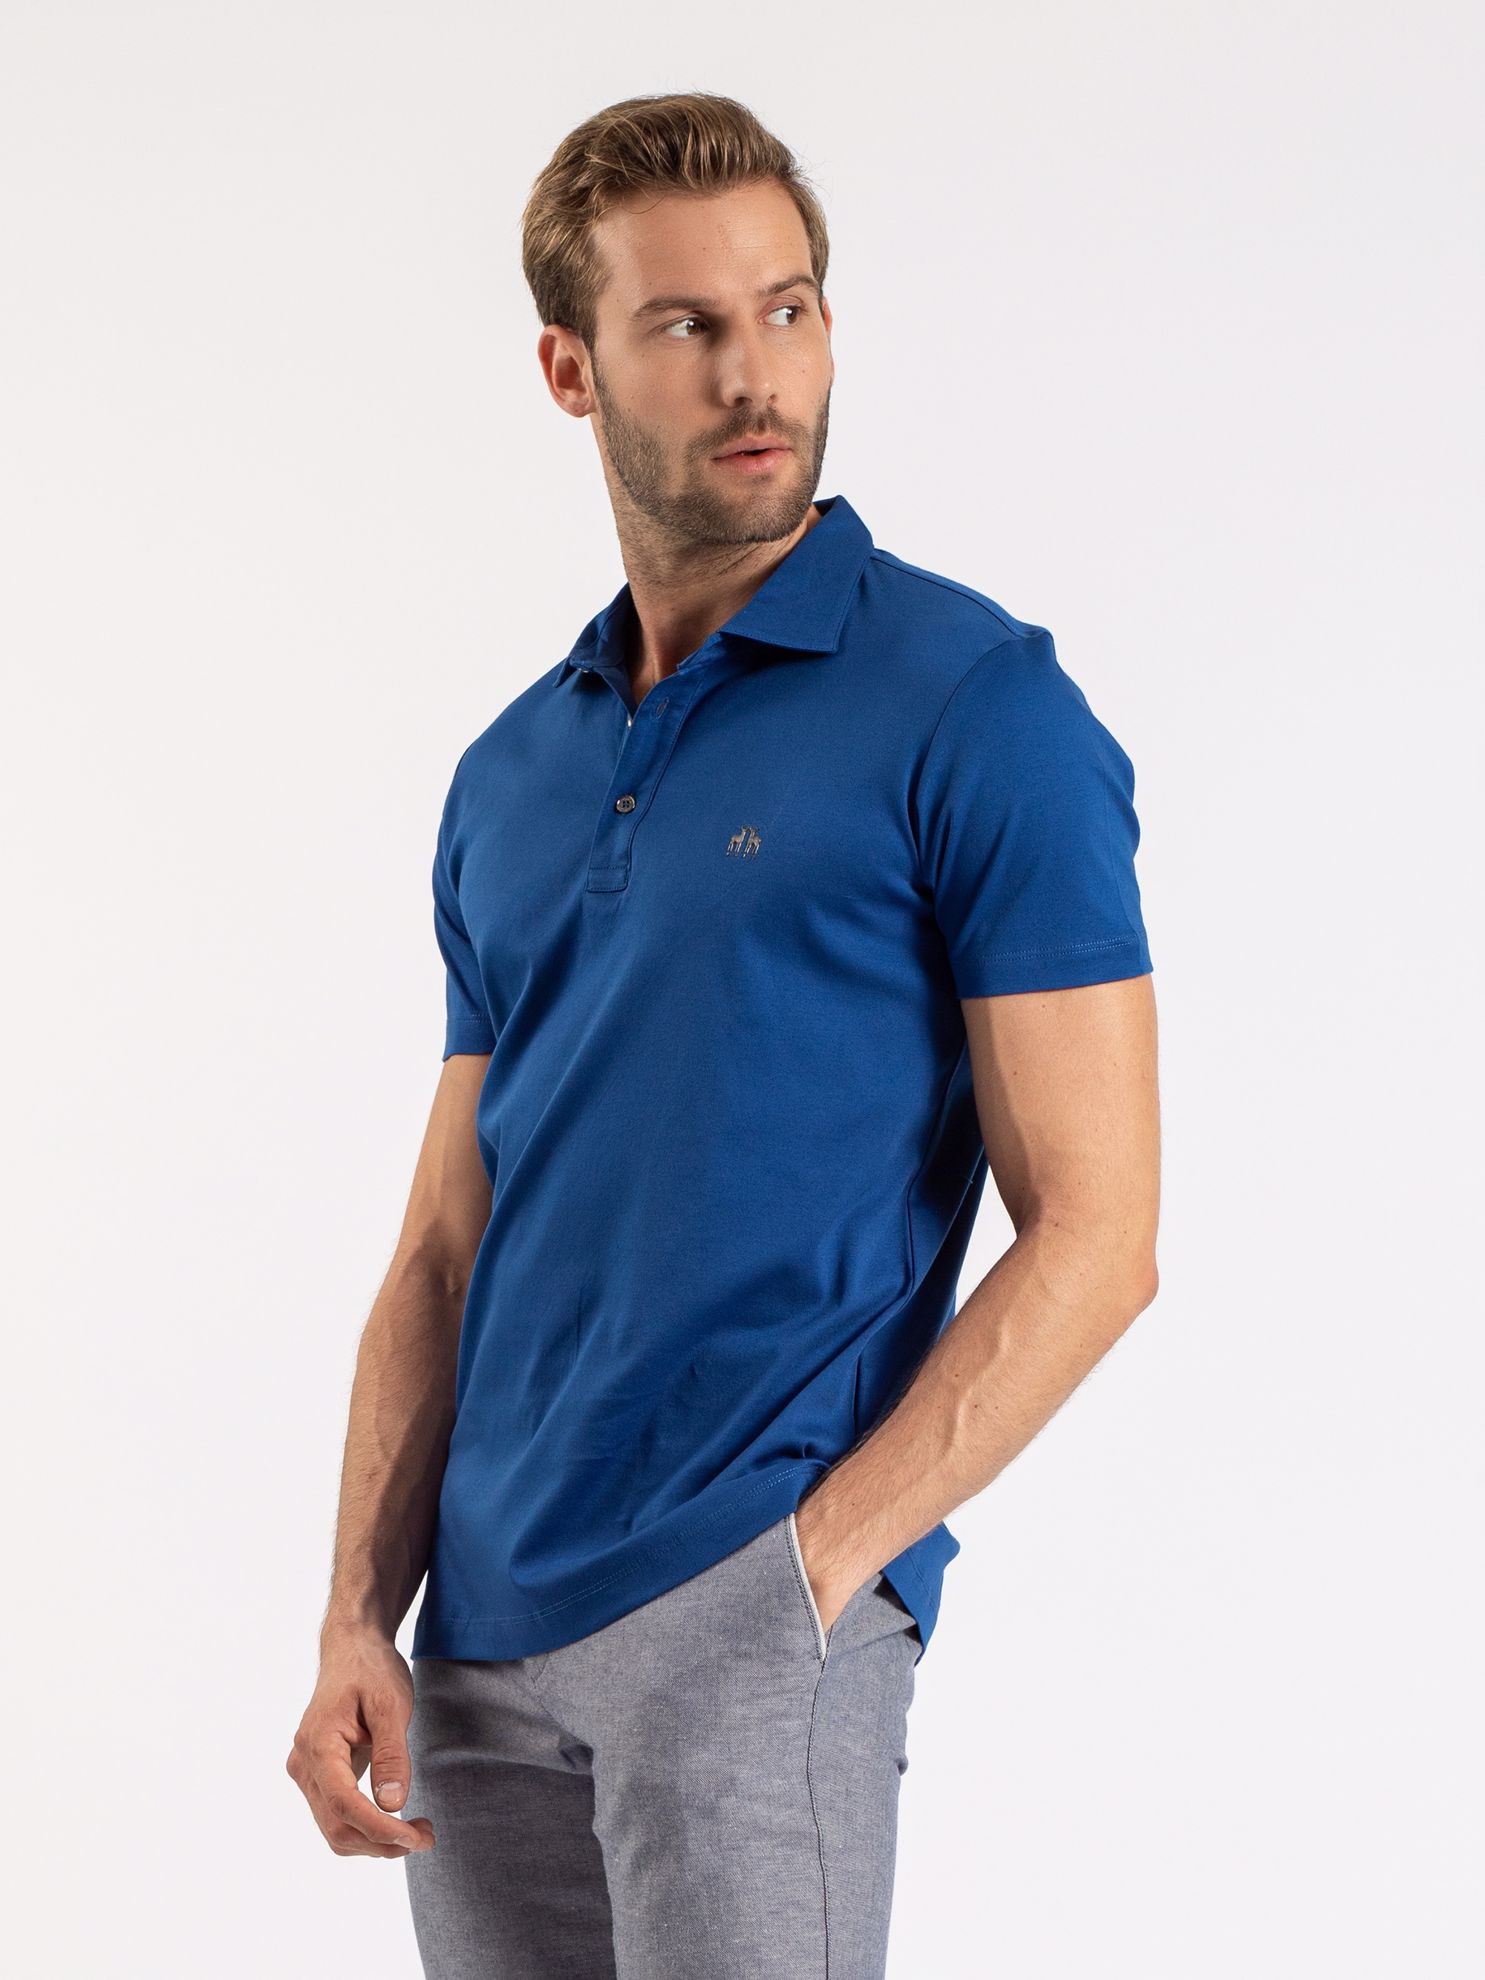 Karaca Erkek Slim Fit Polo Yaka Tişört-Havacı Mavi. ürün görseli